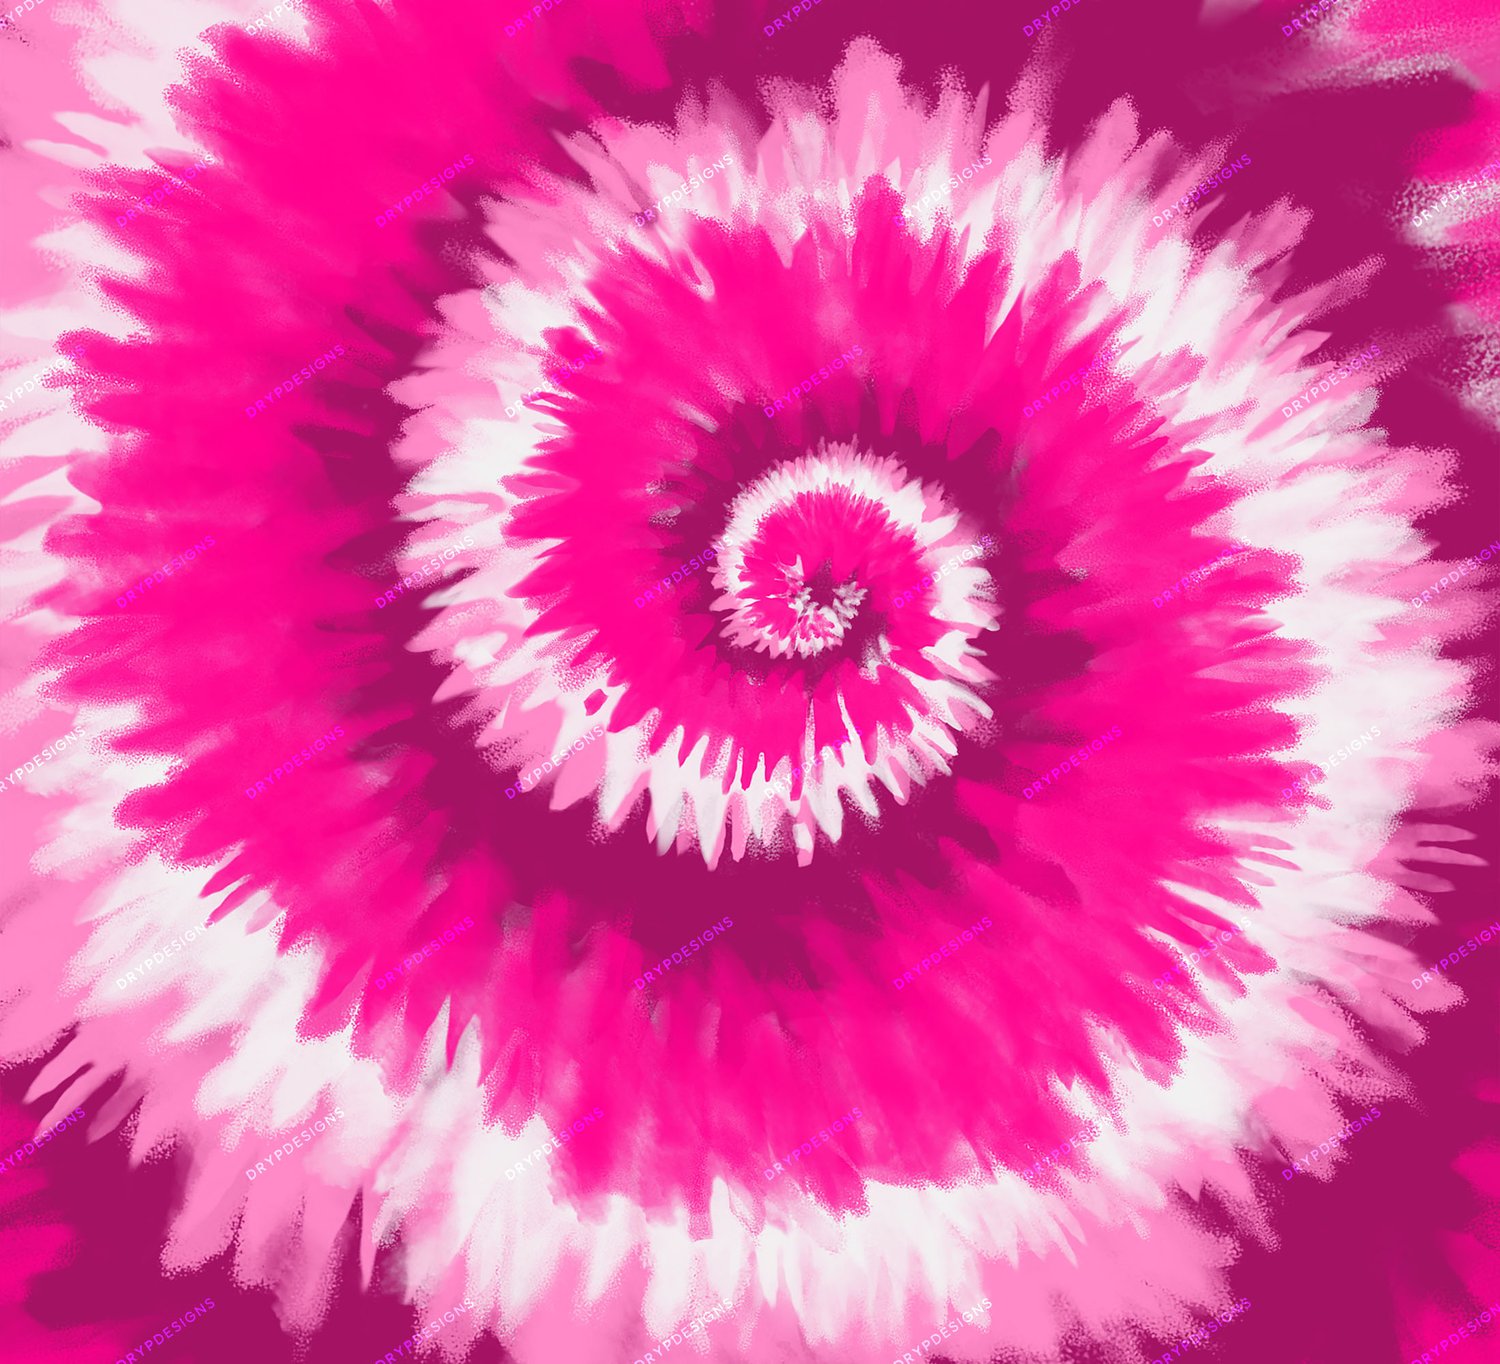 Mẫu hình nền số vòng xoáy tím hồng: Nếu bạn muốn tìm một hình nền thú vị để trang trí màn hình điện thoại của mình, bạn sẽ không thể bỏ qua các mẫu hình nền số vòng xoáy tím hồng. Đây là những hình ảnh rất ấn tượng, đặc biệt khi kết hợp với các biểu tượng hình tròn trung tâm.